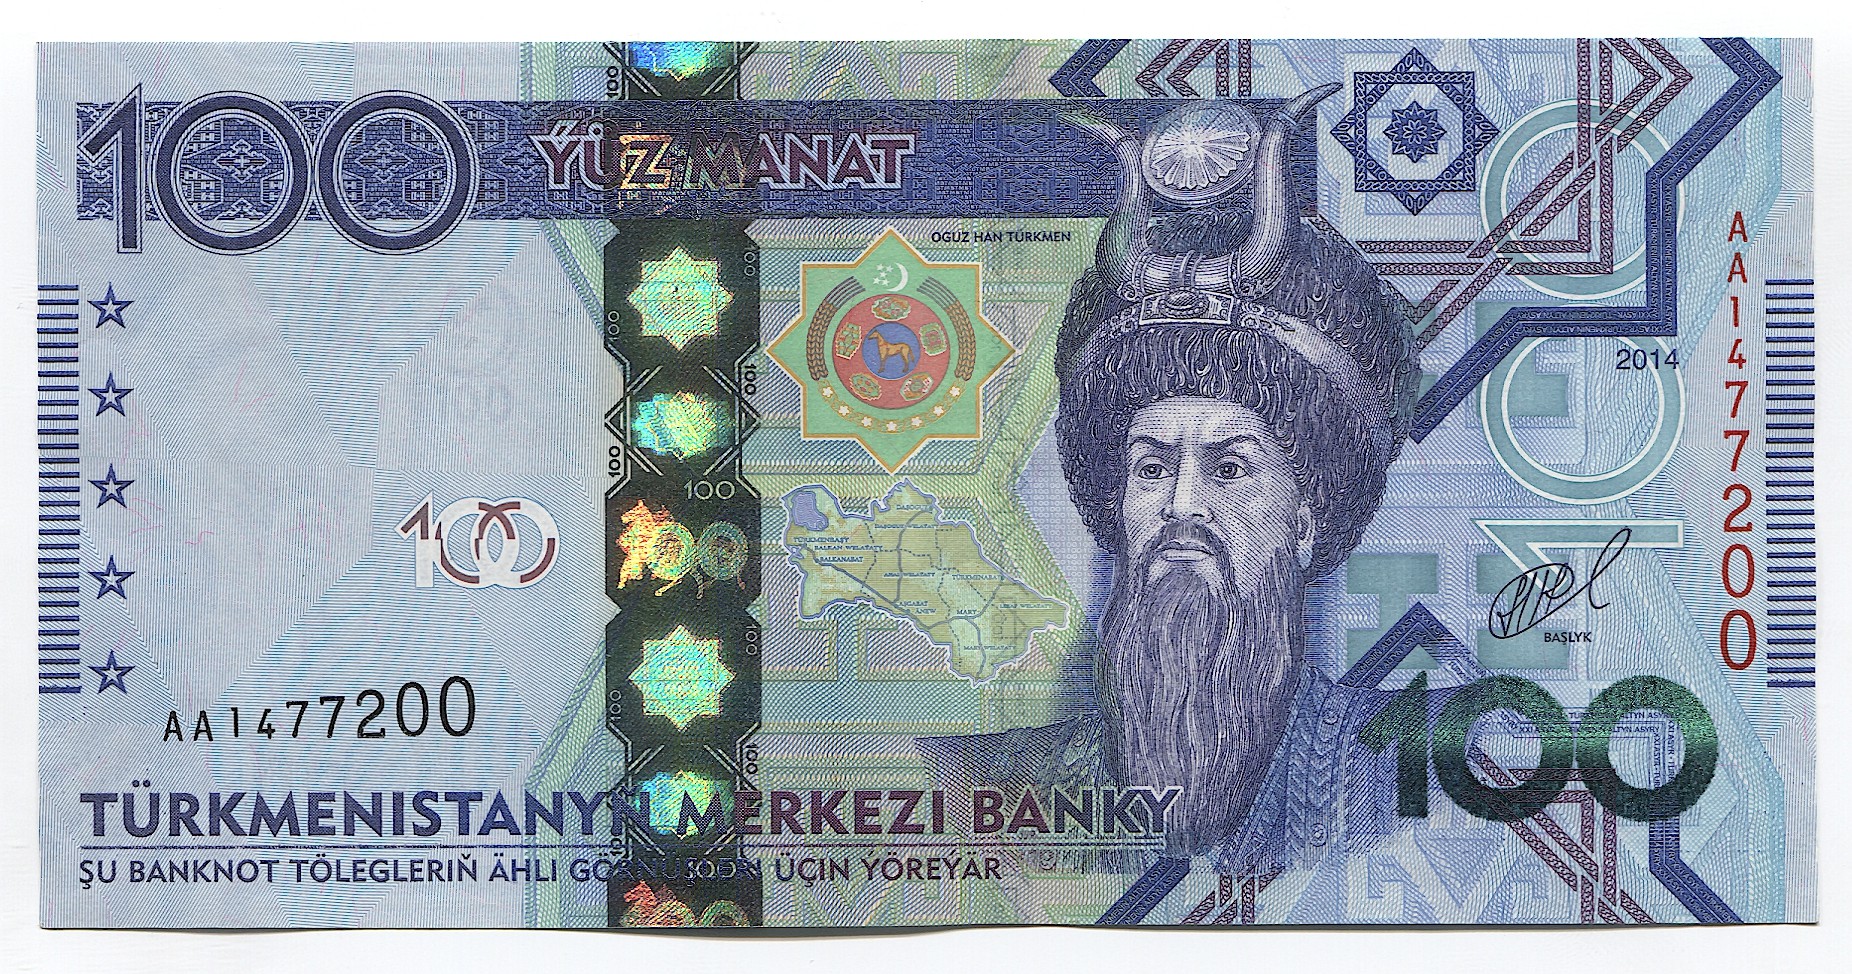 TURKMENISTAN 100 MANAT 2014 P 34 XF 